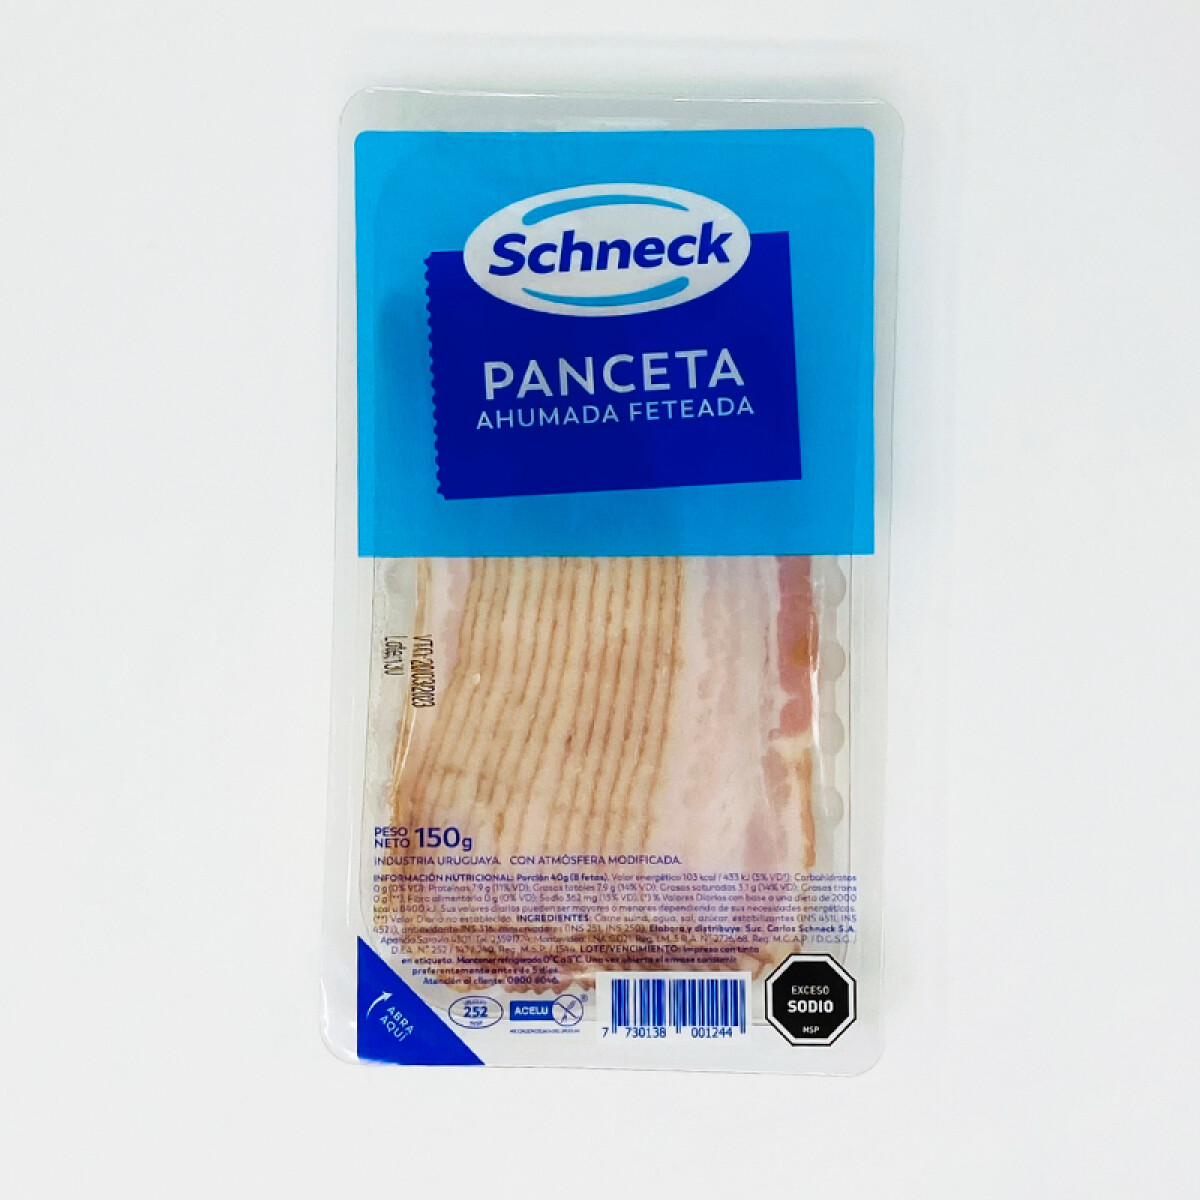 Panceta Ahumada Schneck feteada envasada en atmósfera modificada - 150 g. 